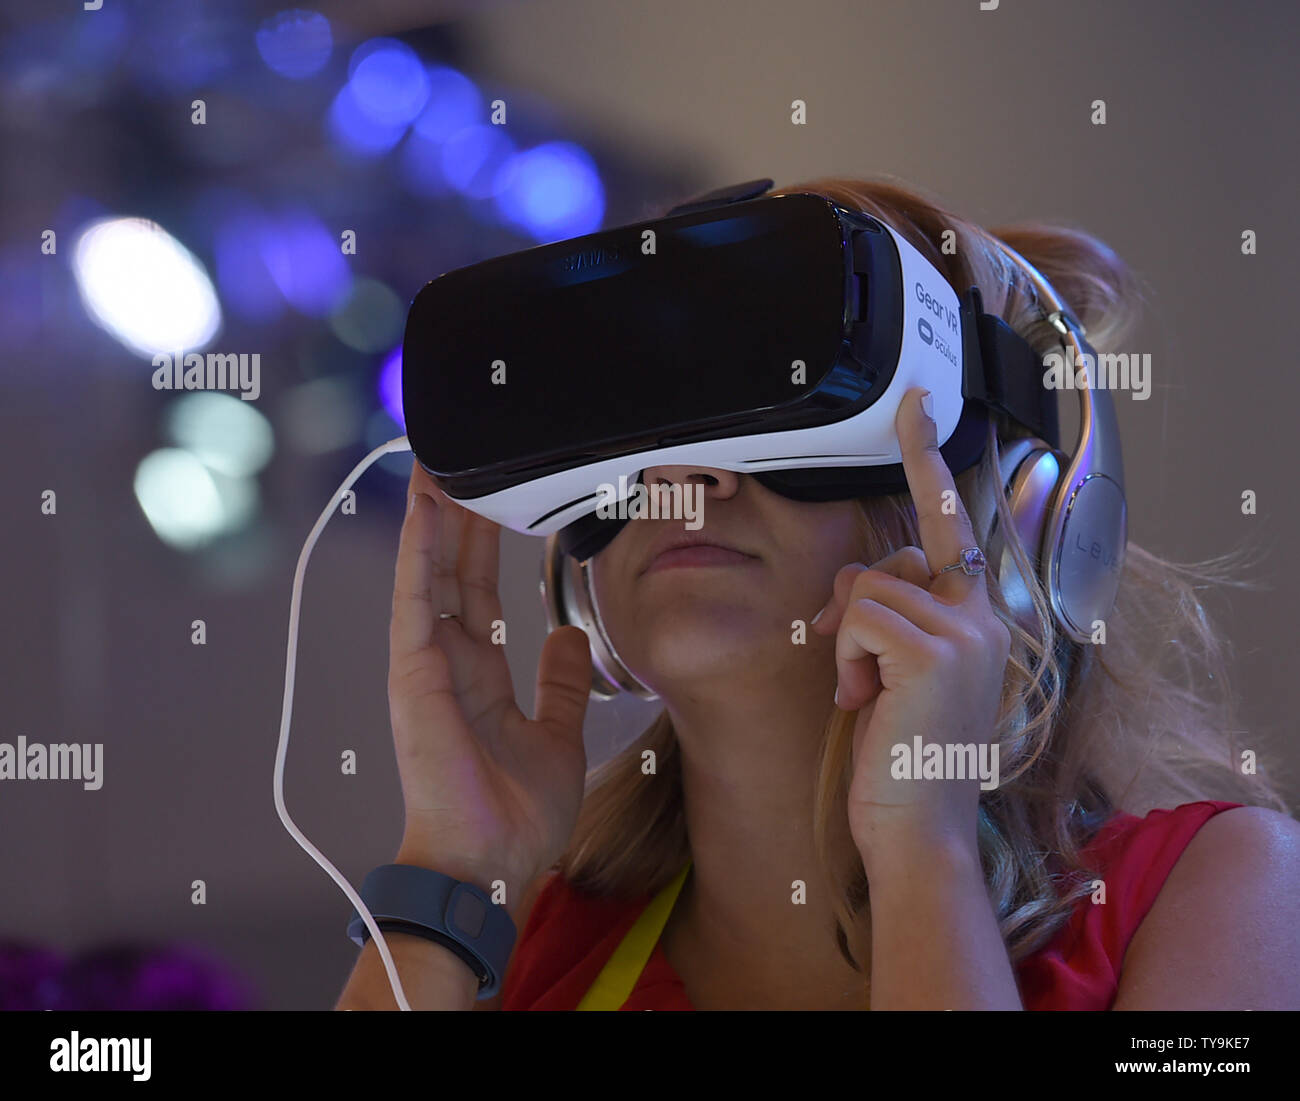 Oculus Rift VR - AGR Las Vegas